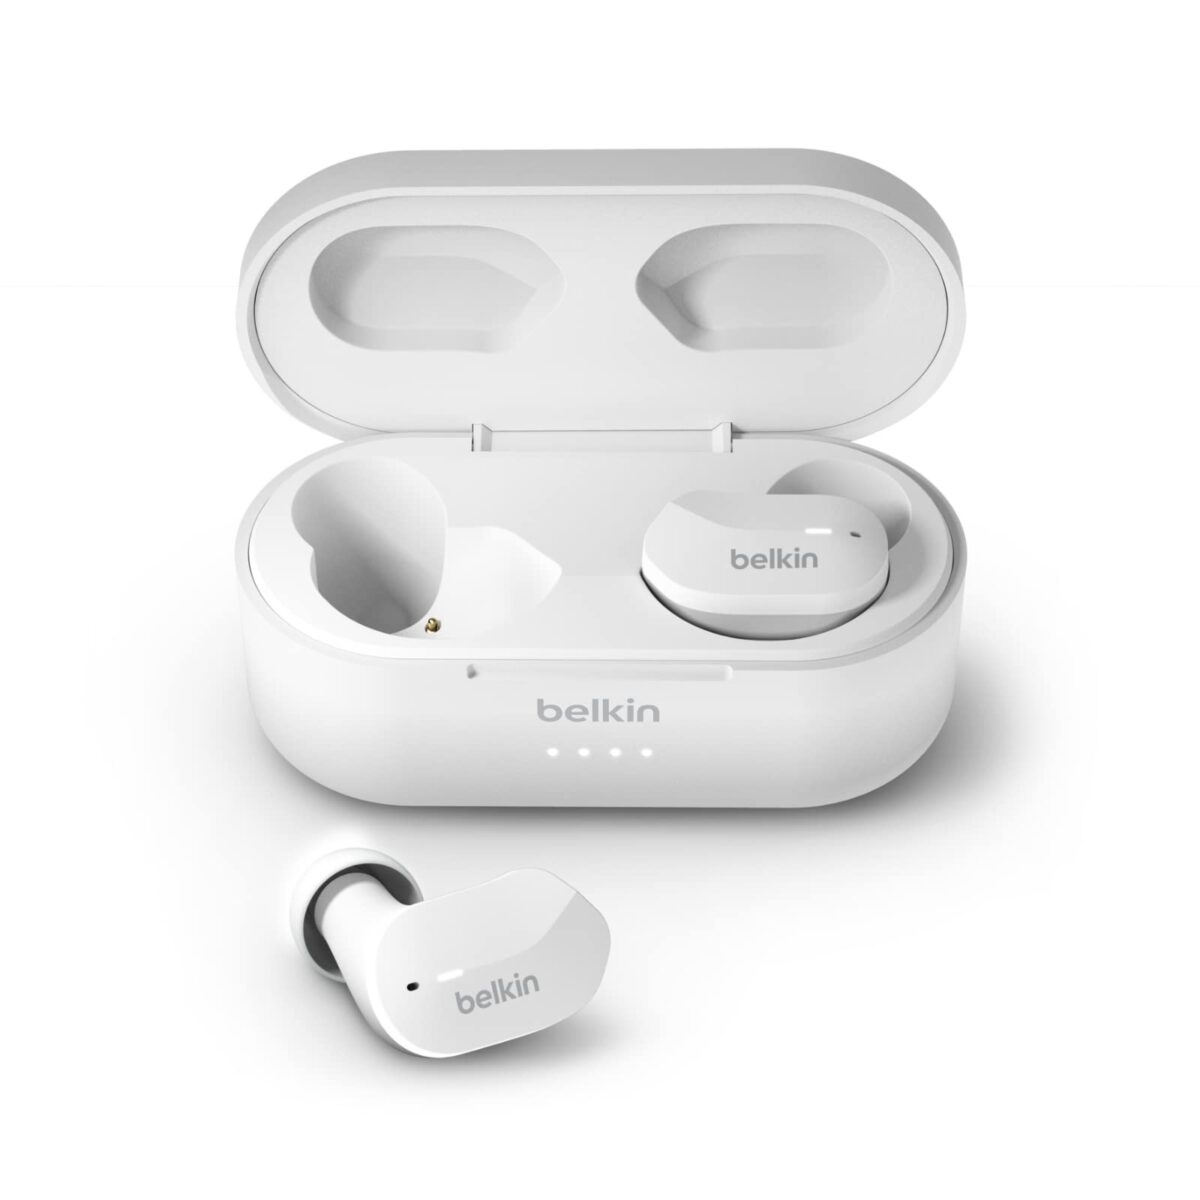 Belkin SoundForm True Wireless Earbud Headphones Review